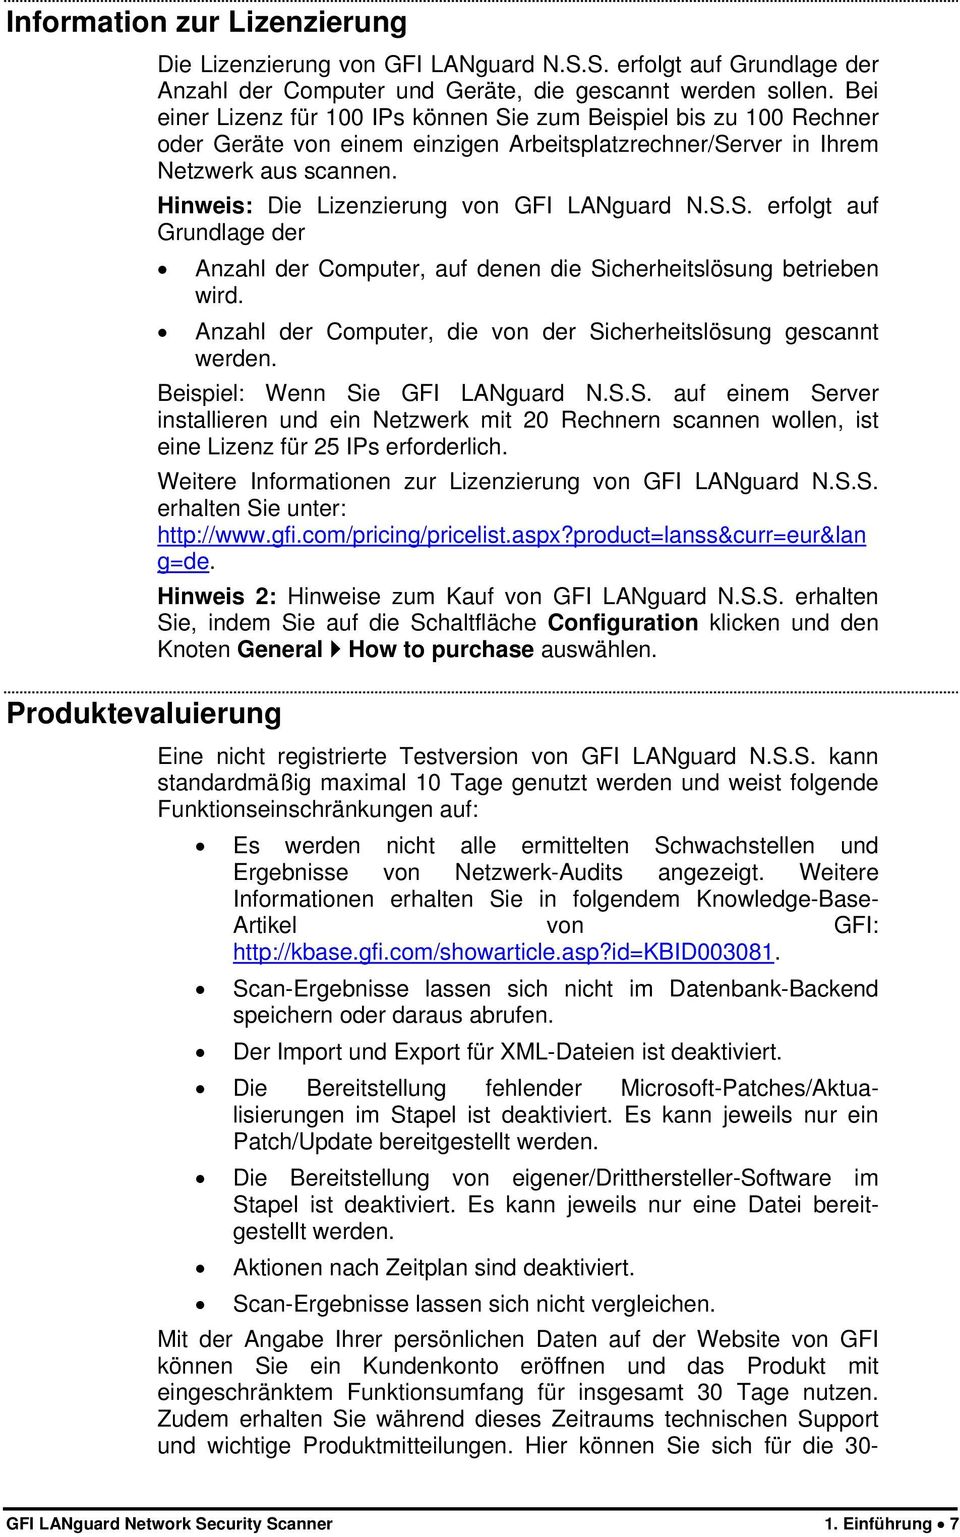 Hinweis: Die Lizenzierung von GFI LANguard N.S.S. erfolgt auf Grundlage der Anzahl der Computer, auf denen die Sicherheitslösung betrieben wird.